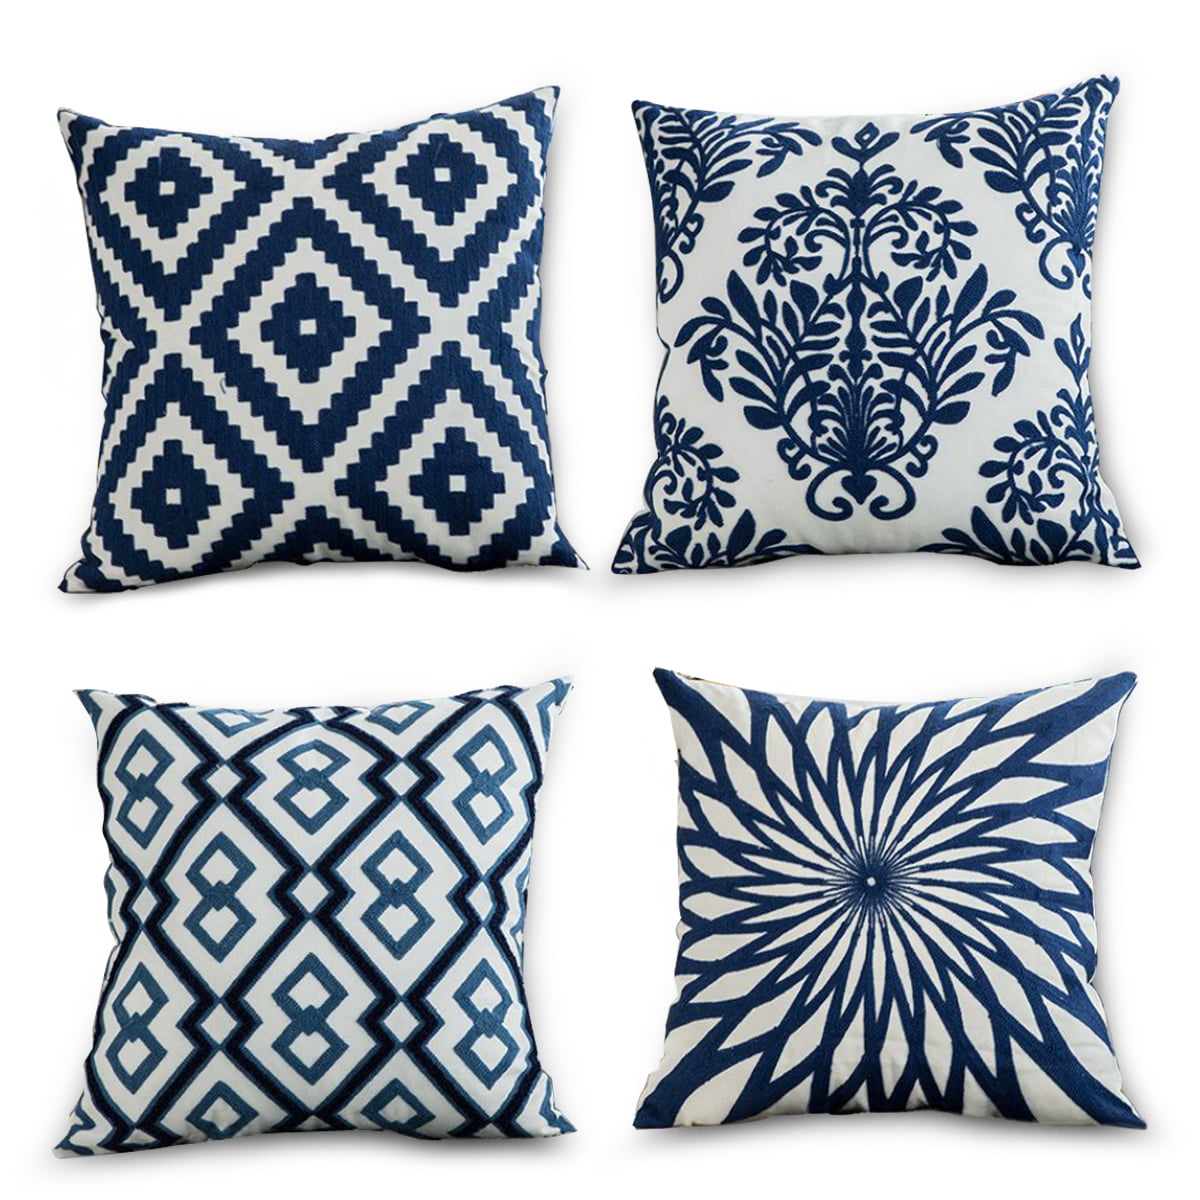 18" Blue Simple Pattern Pillow Cases Sofa Car Waist Throw Cushion Cover Decor 